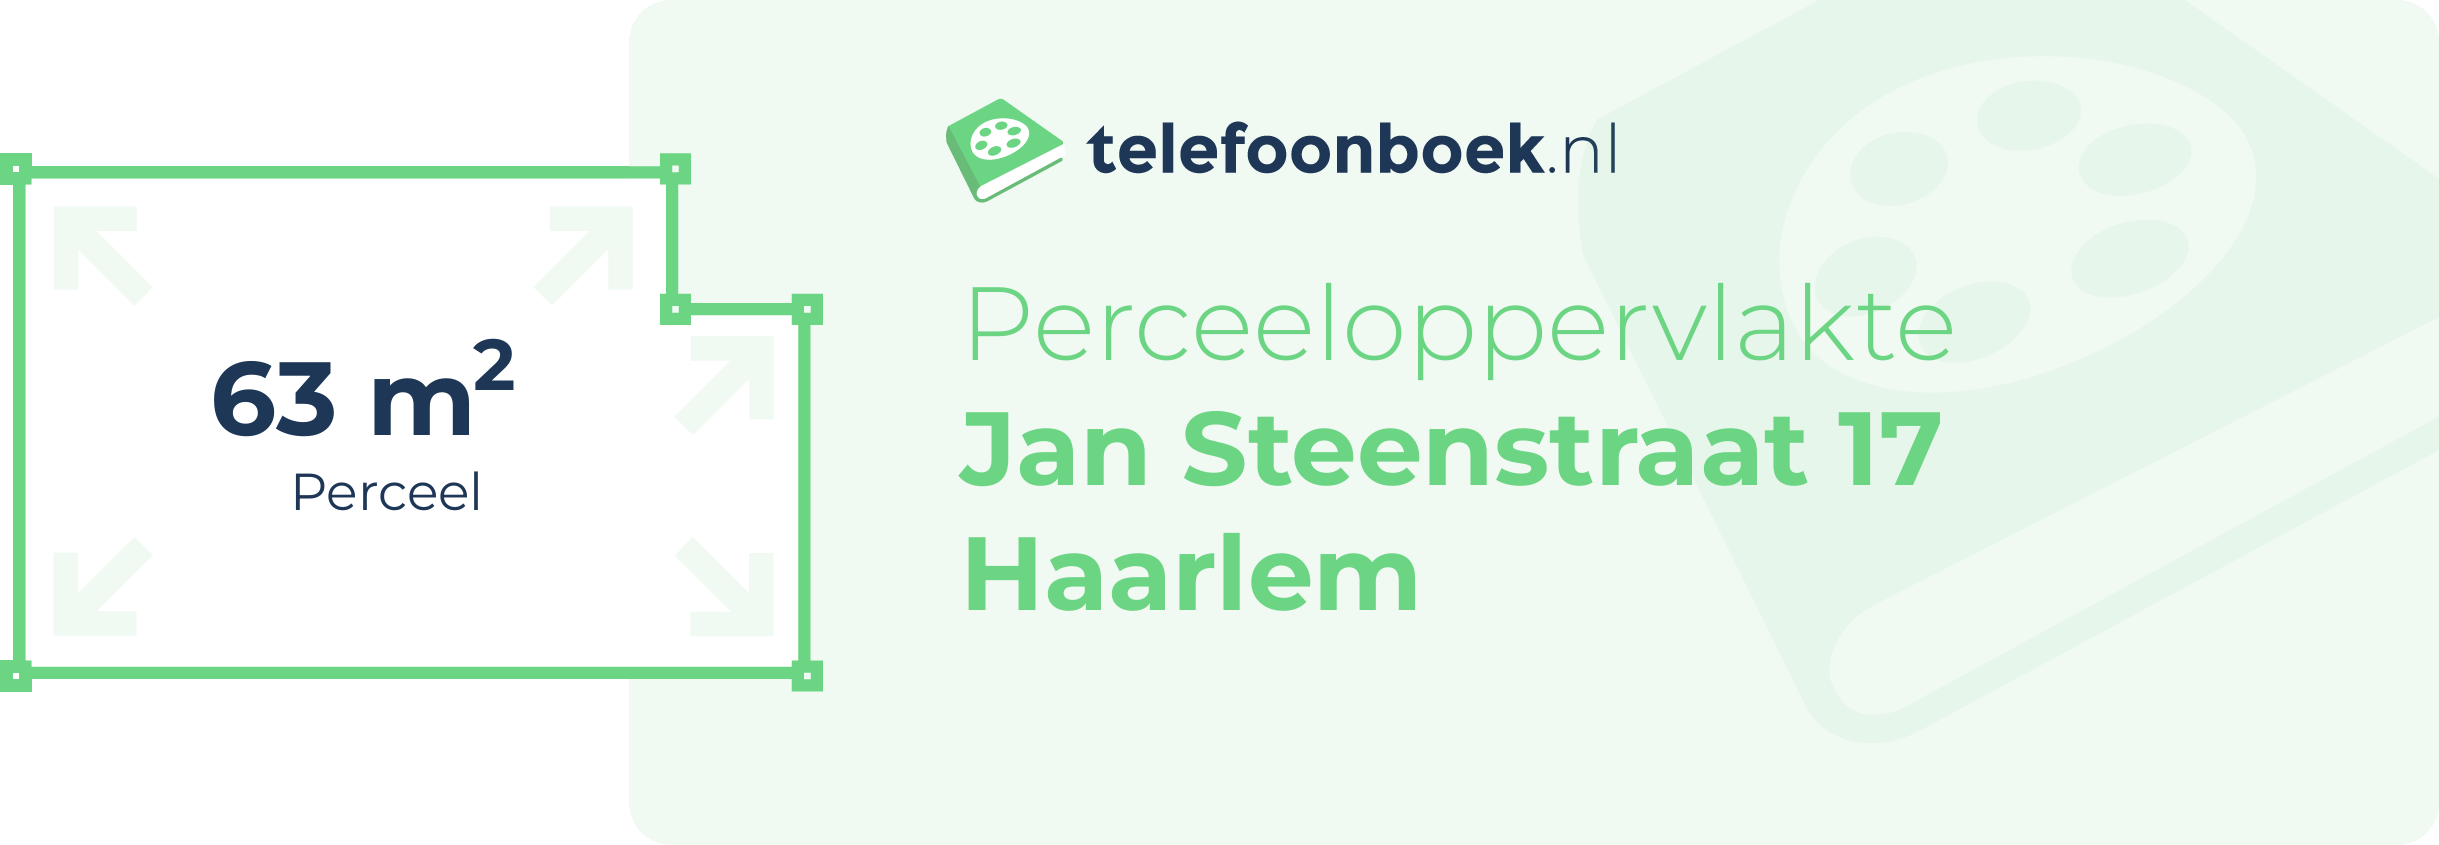 Perceeloppervlakte Jan Steenstraat 17 Haarlem